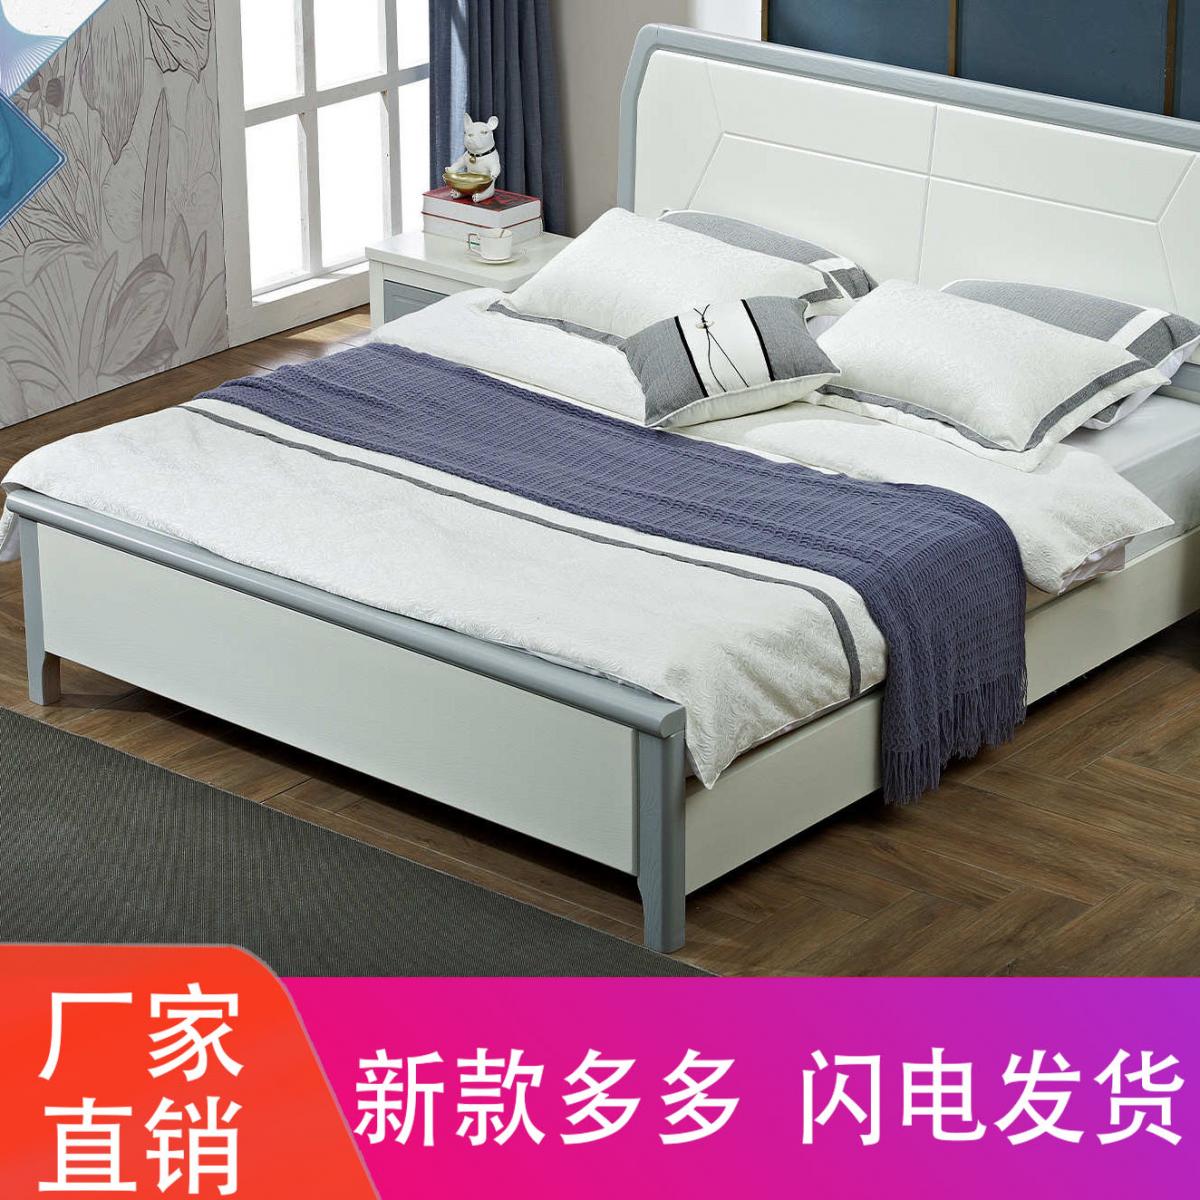 现代简约白蜡木北欧轻奢1.8米1.5米双人婚床主卧实木极简家具